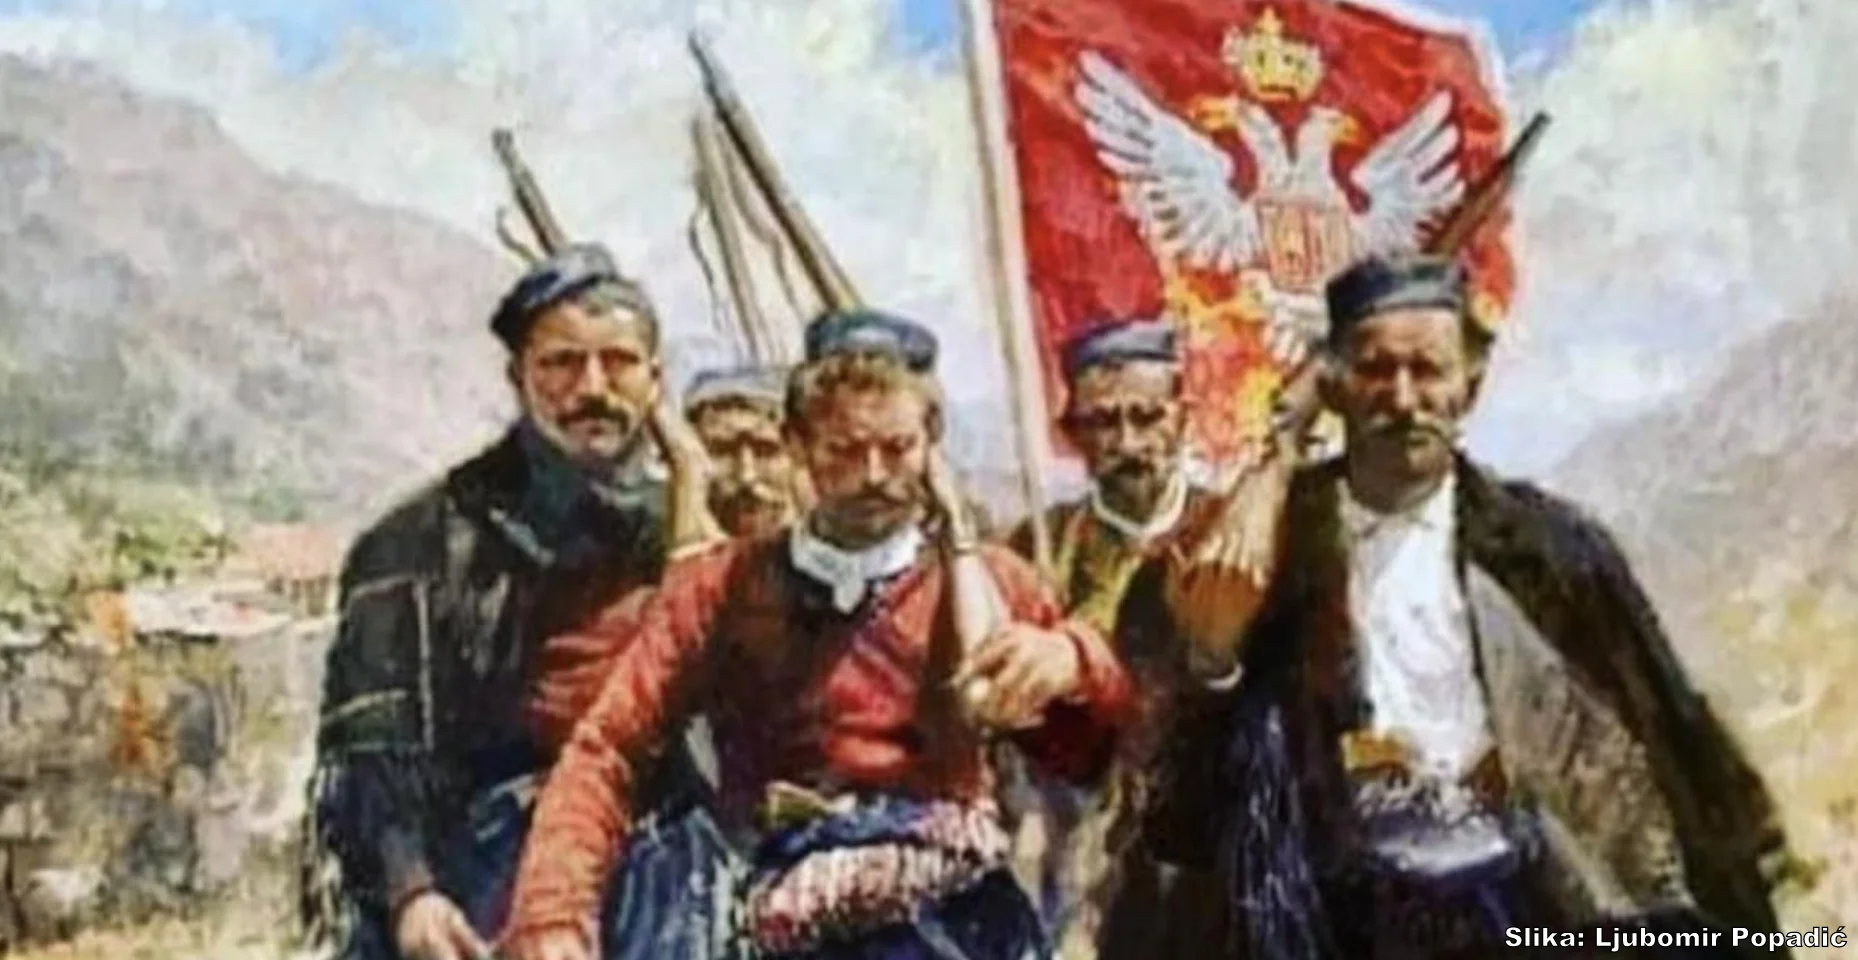 Opsovao mi je majku crnogorsku… ispovijest Nikole-Starog Kovačevića